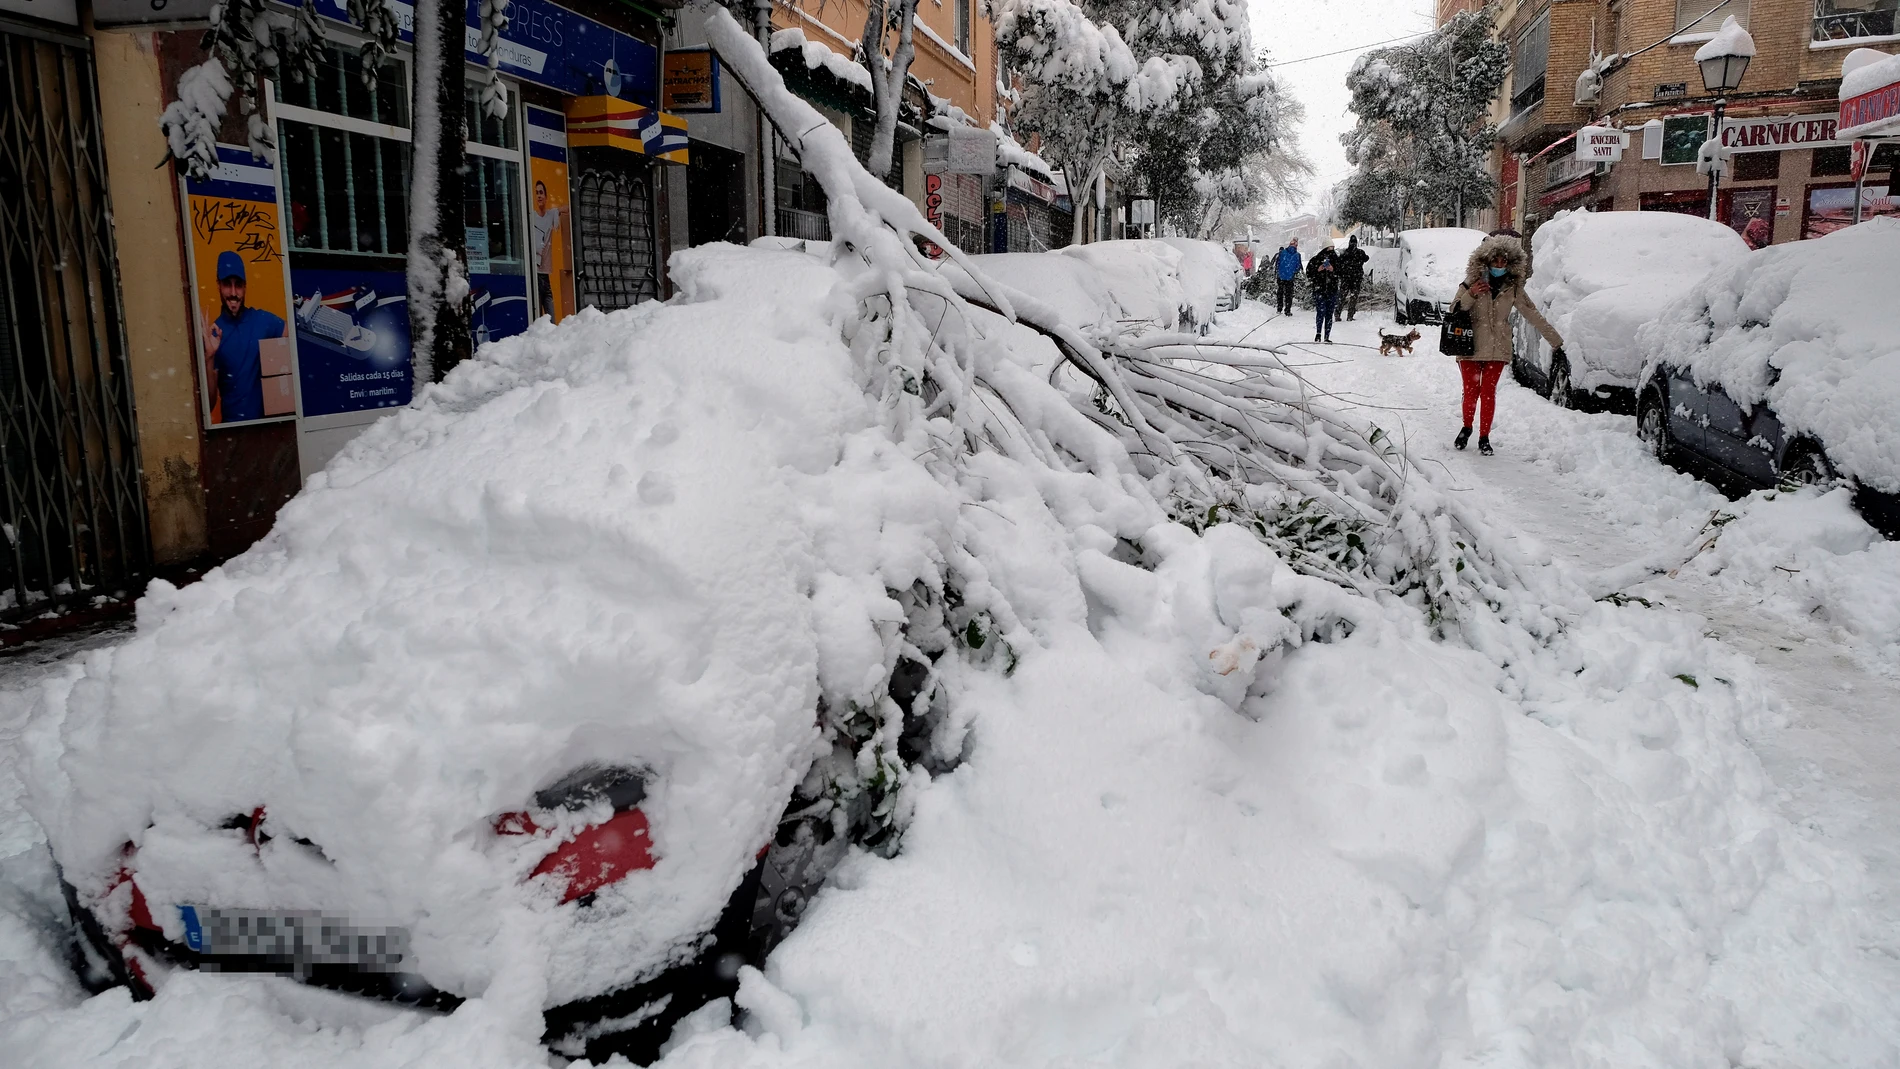 Una rama cae sobre un coche en el barrio madrileño de Urgel, Carabanchel, calle Camino Viejo de Leganés